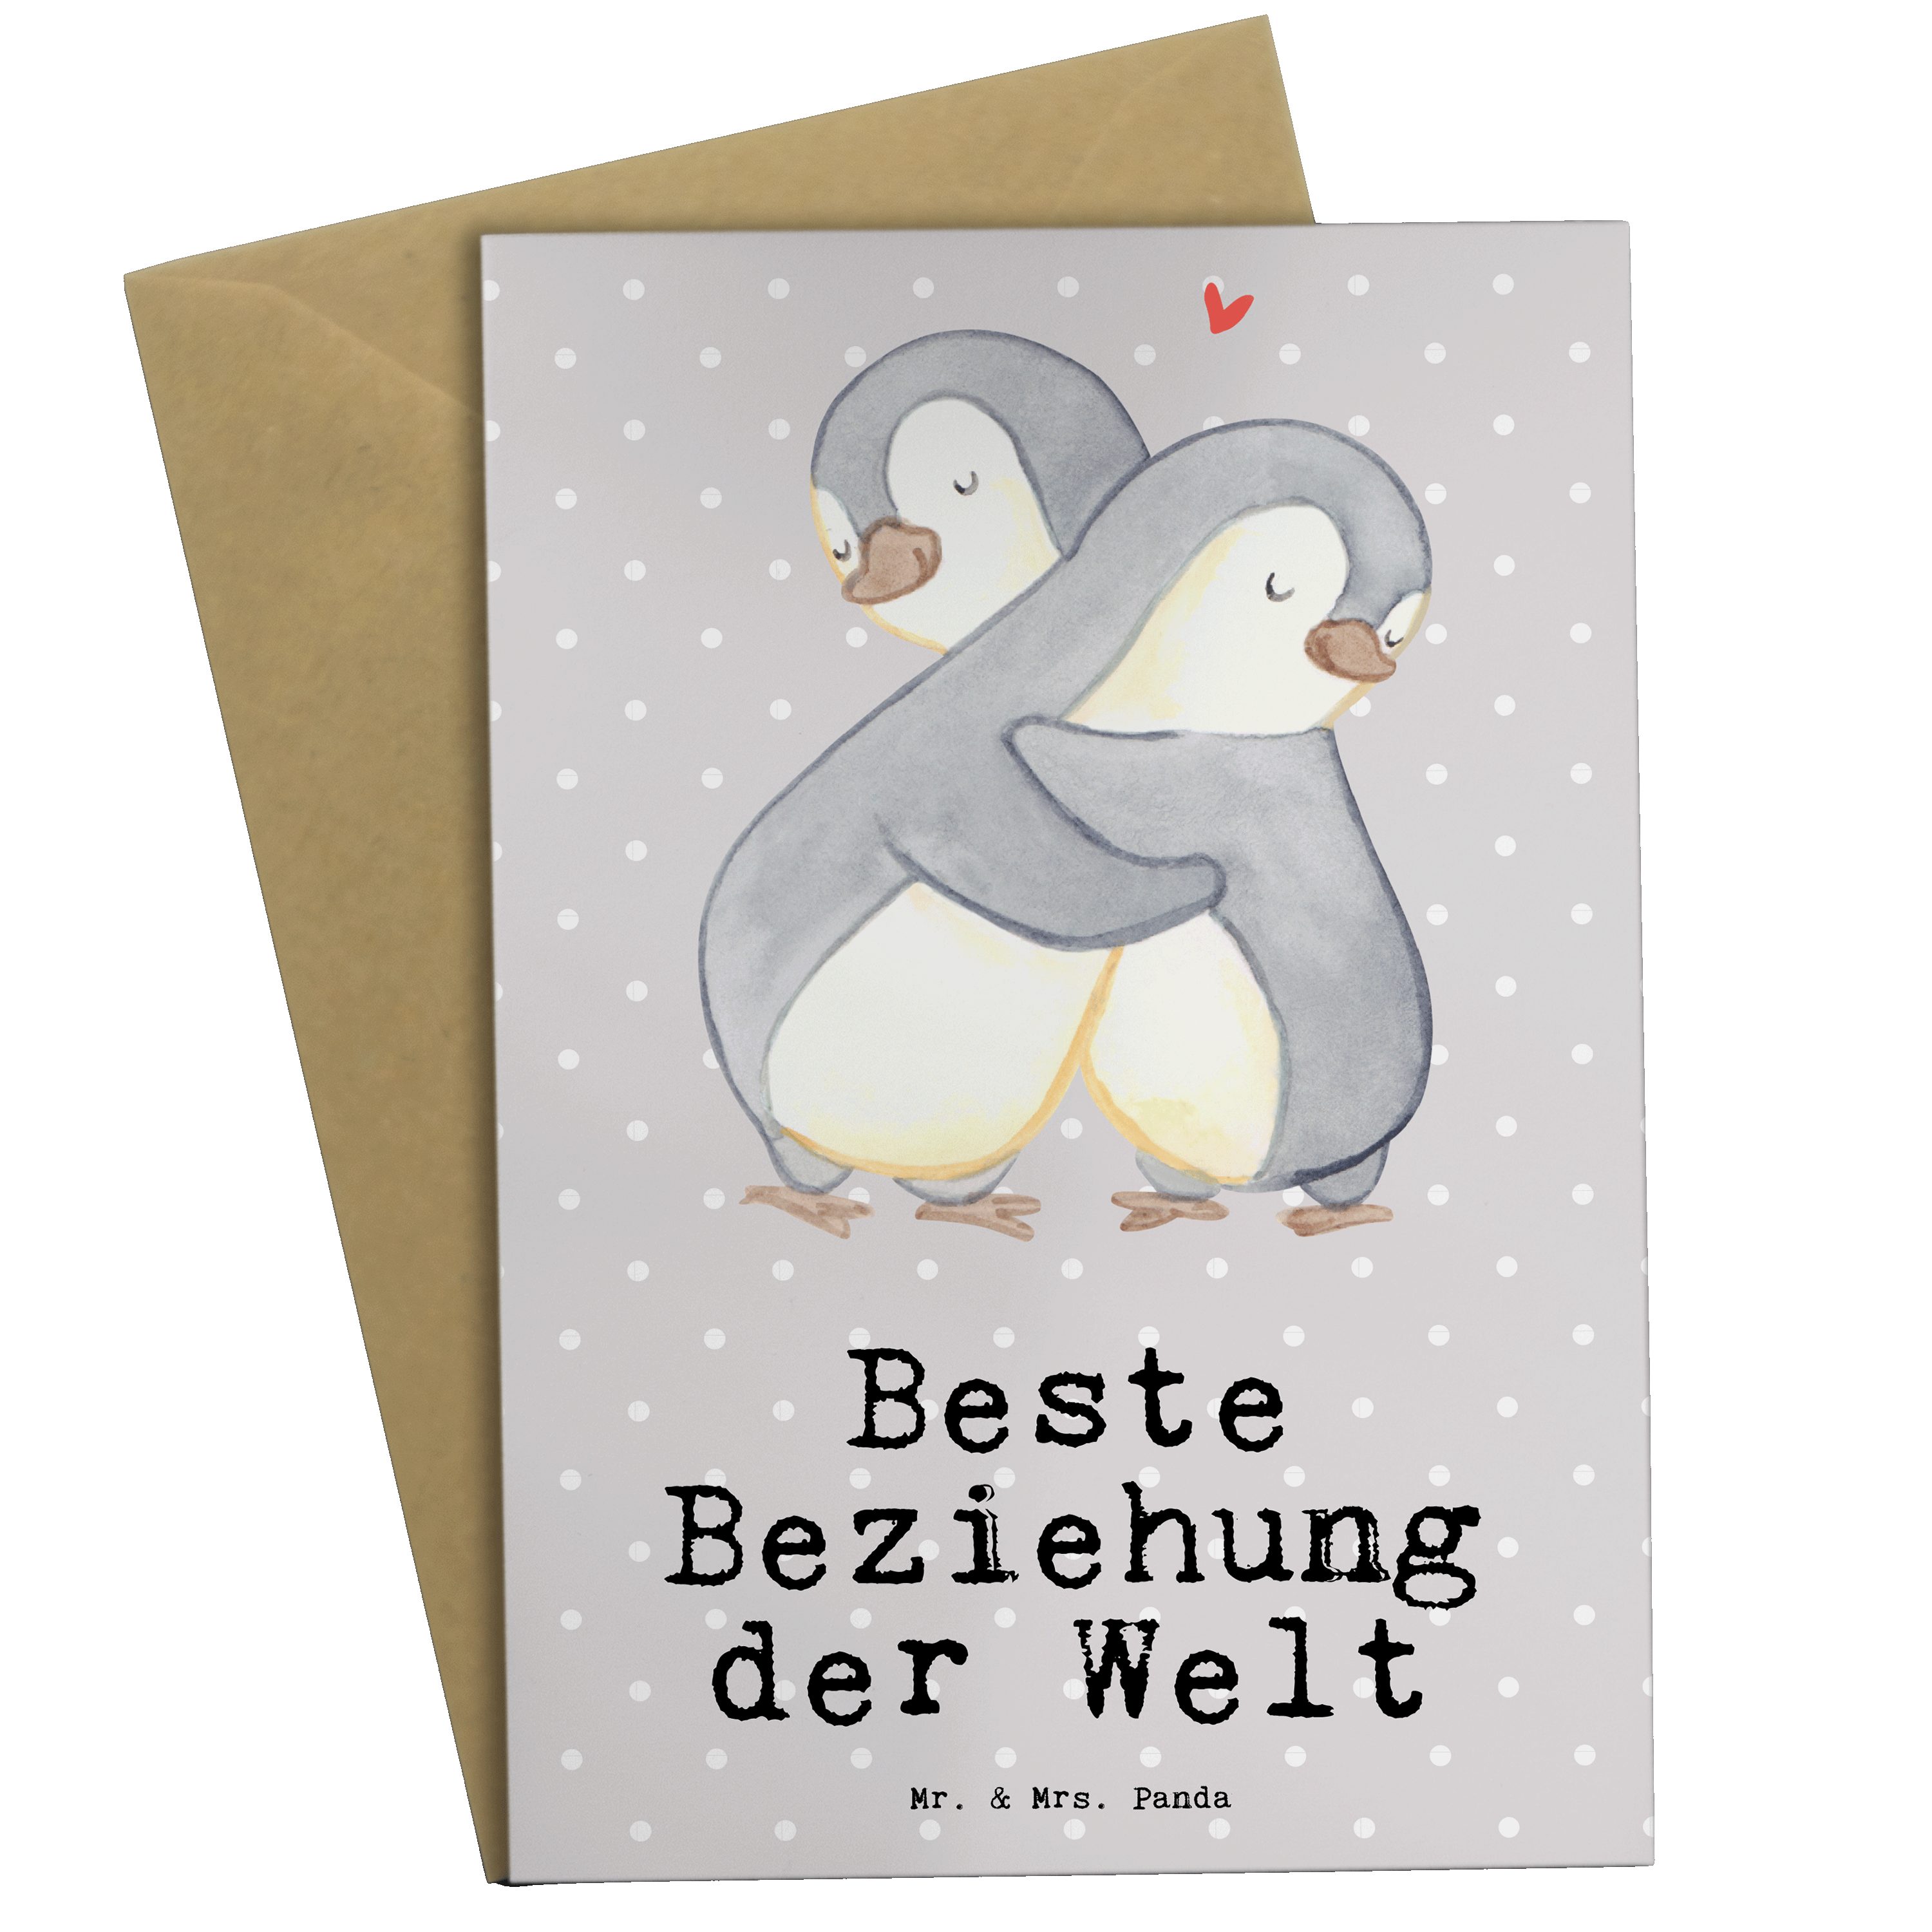 der Mr. Verlieb - & Welt Beziehung Panda Pastell Grau Mrs. Grußkarte Geschenk, Pinguin - Beste